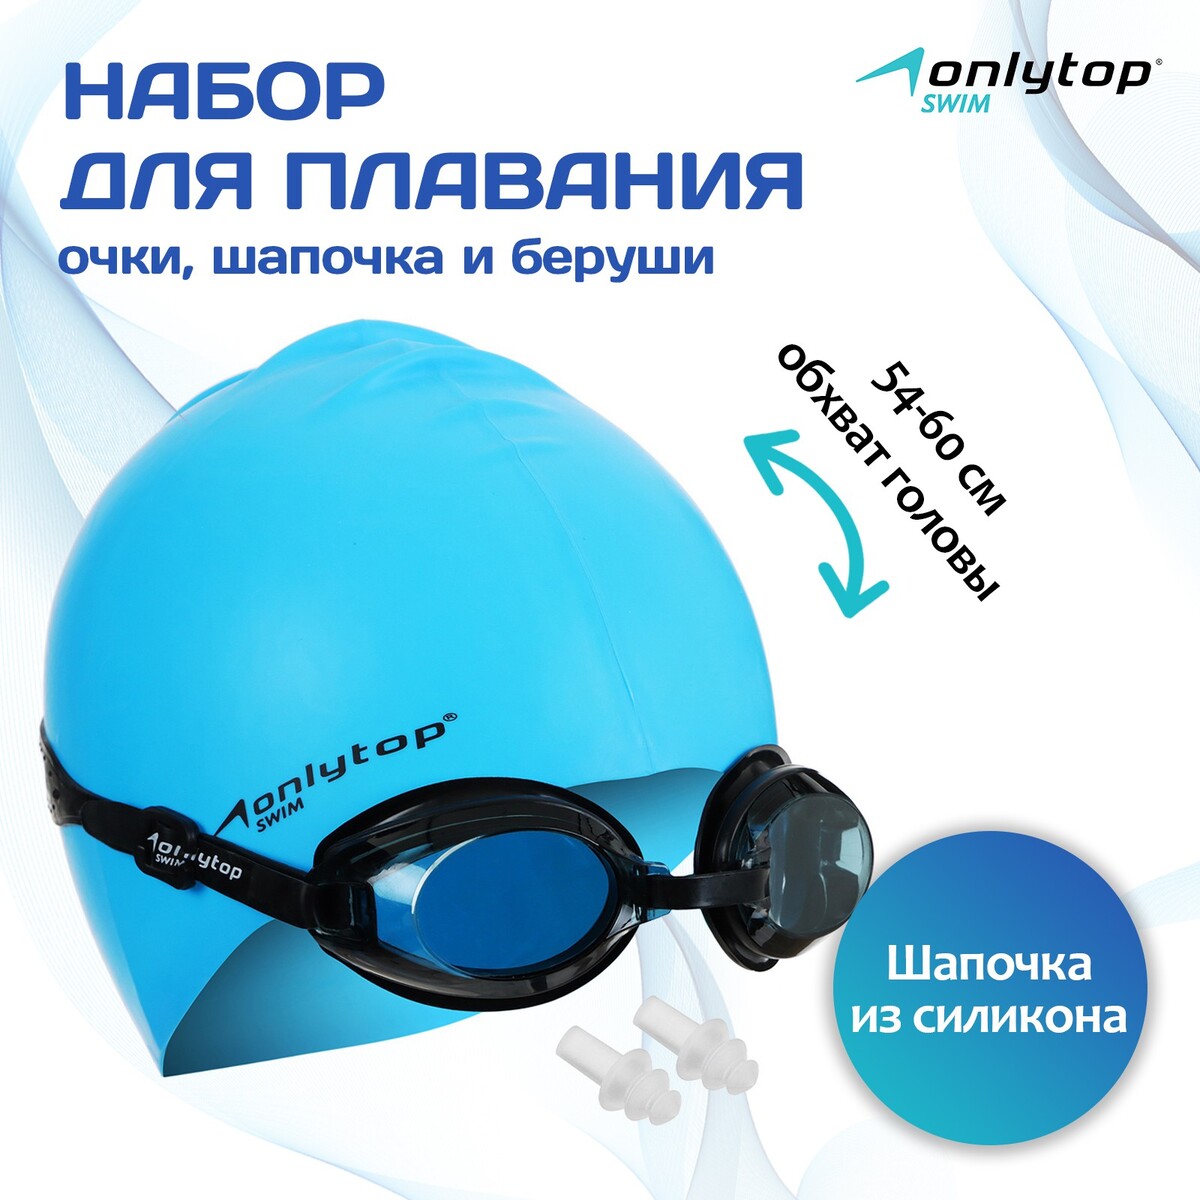 Набор для плавания onlytop: шапочка, очки, беруши очки для плавания atemi s203 голубой